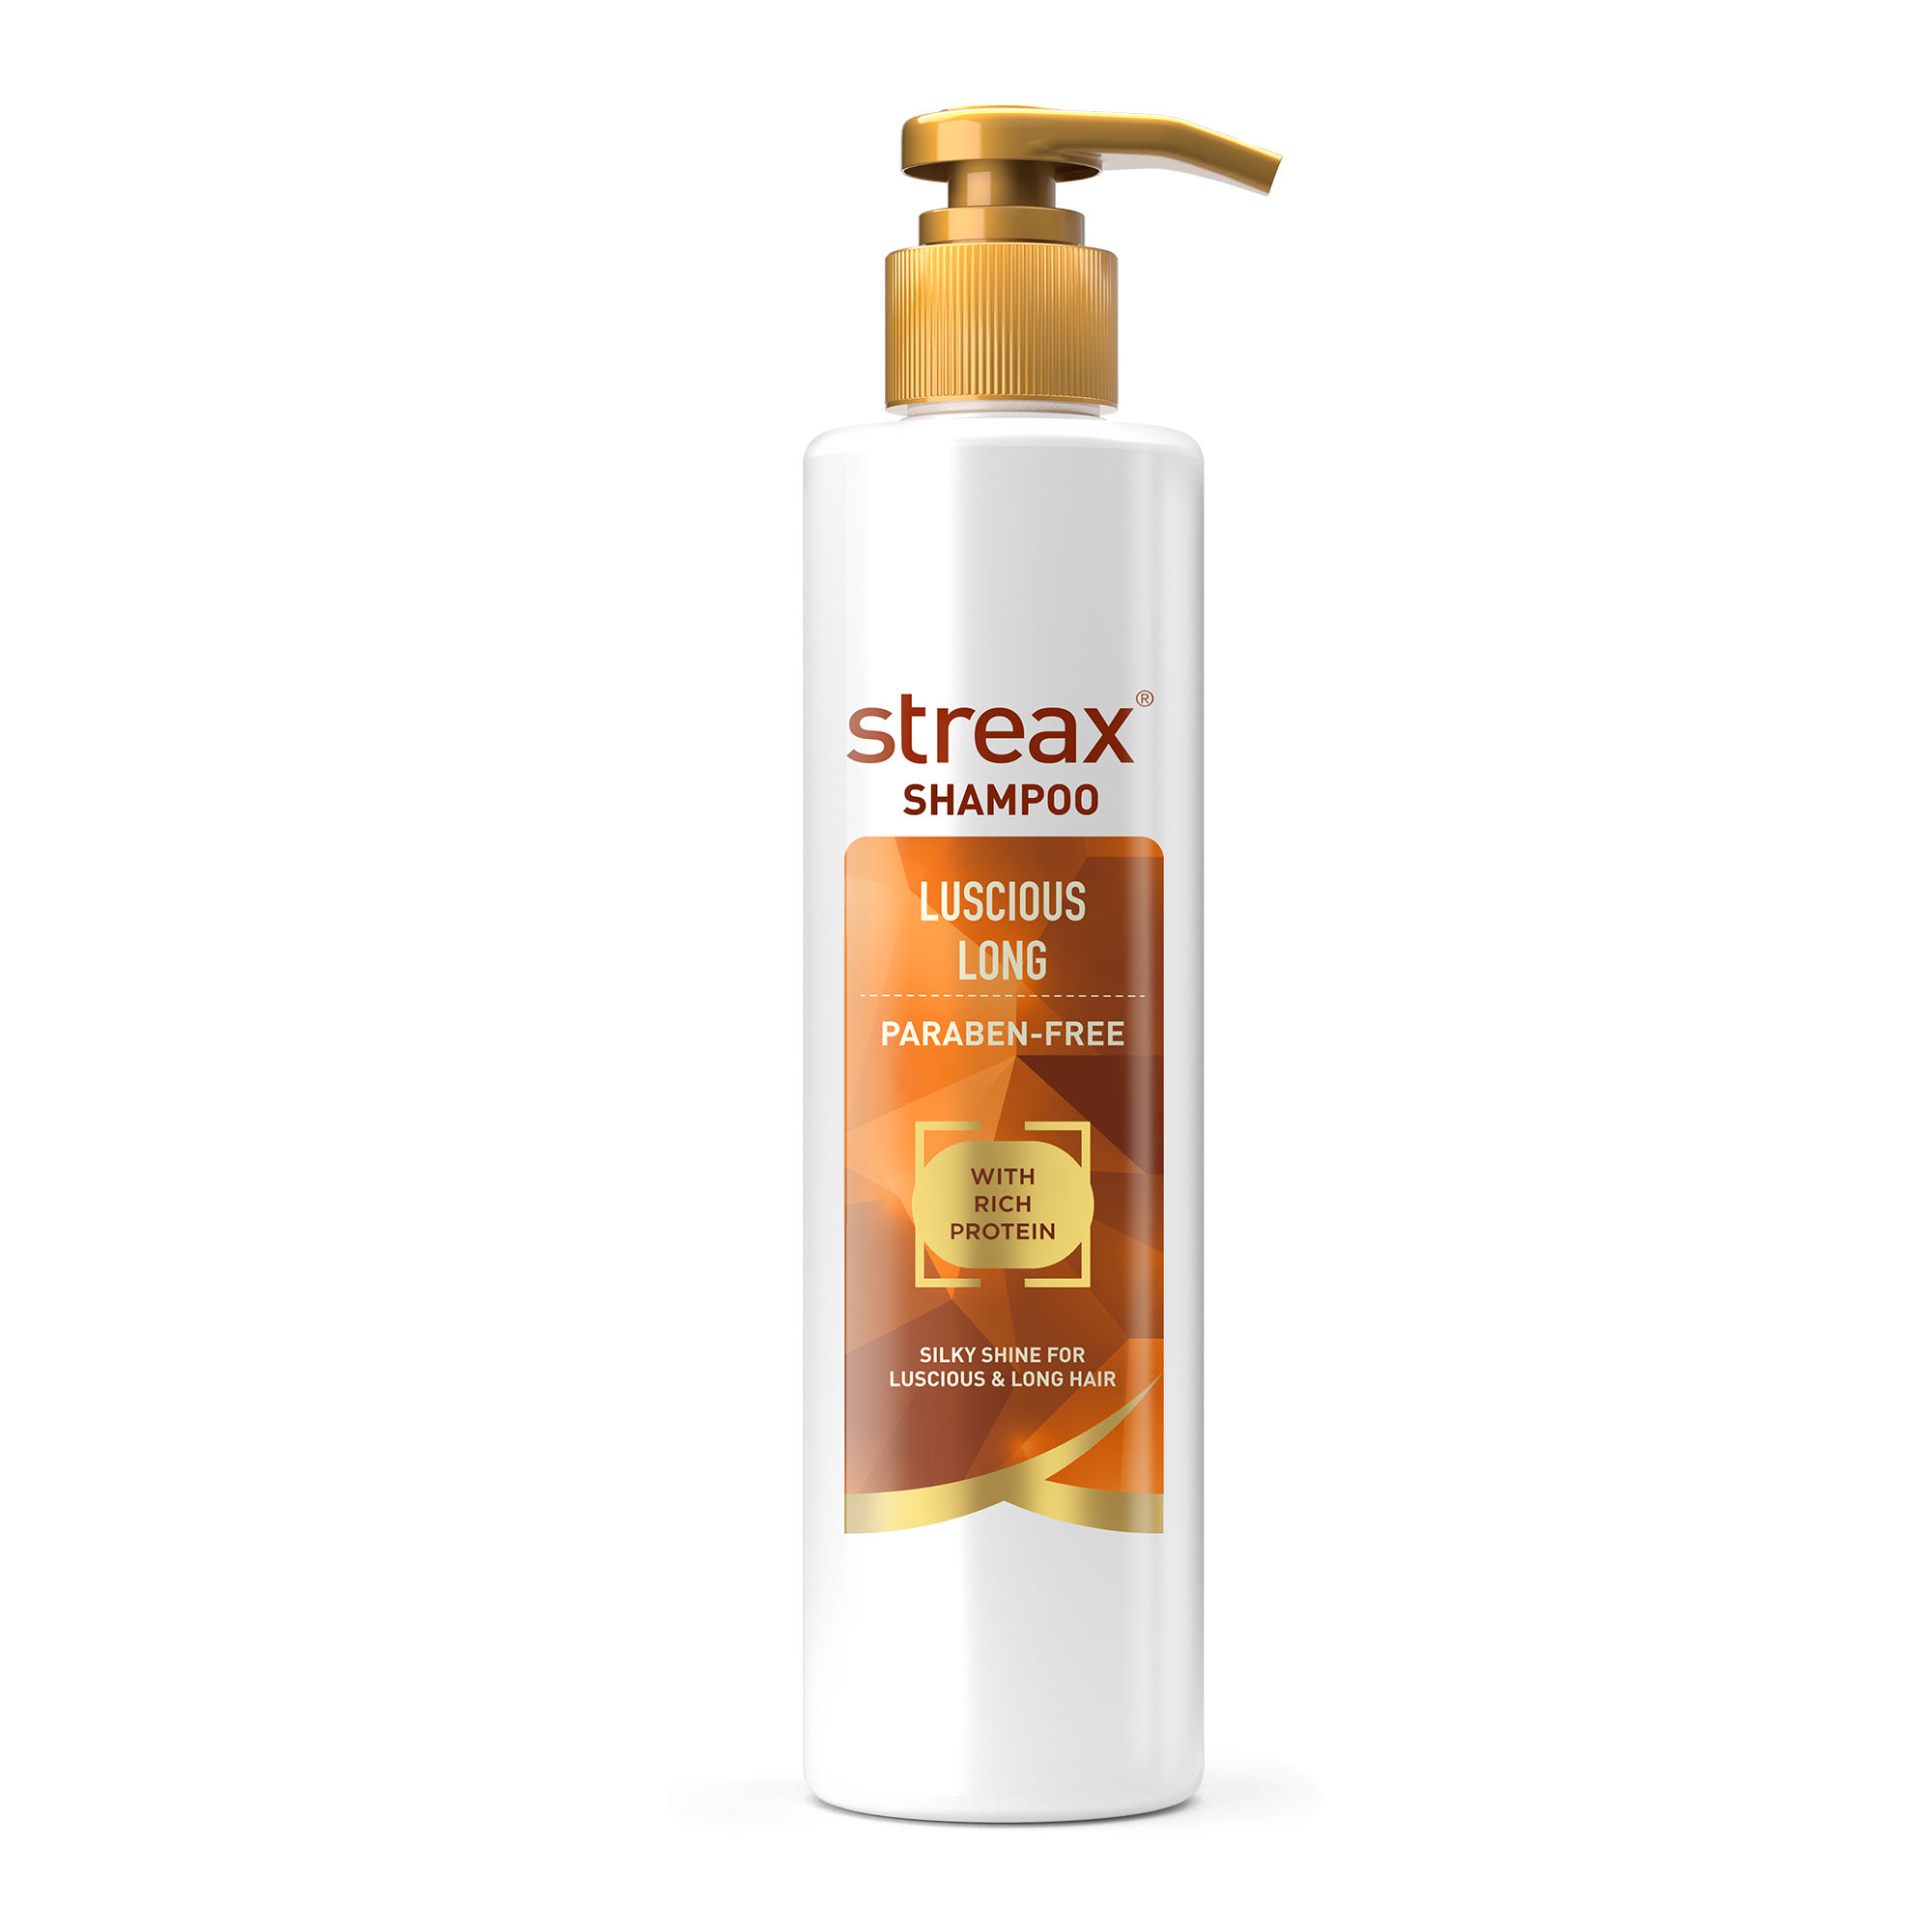 Streax Luscious Long Shampoo